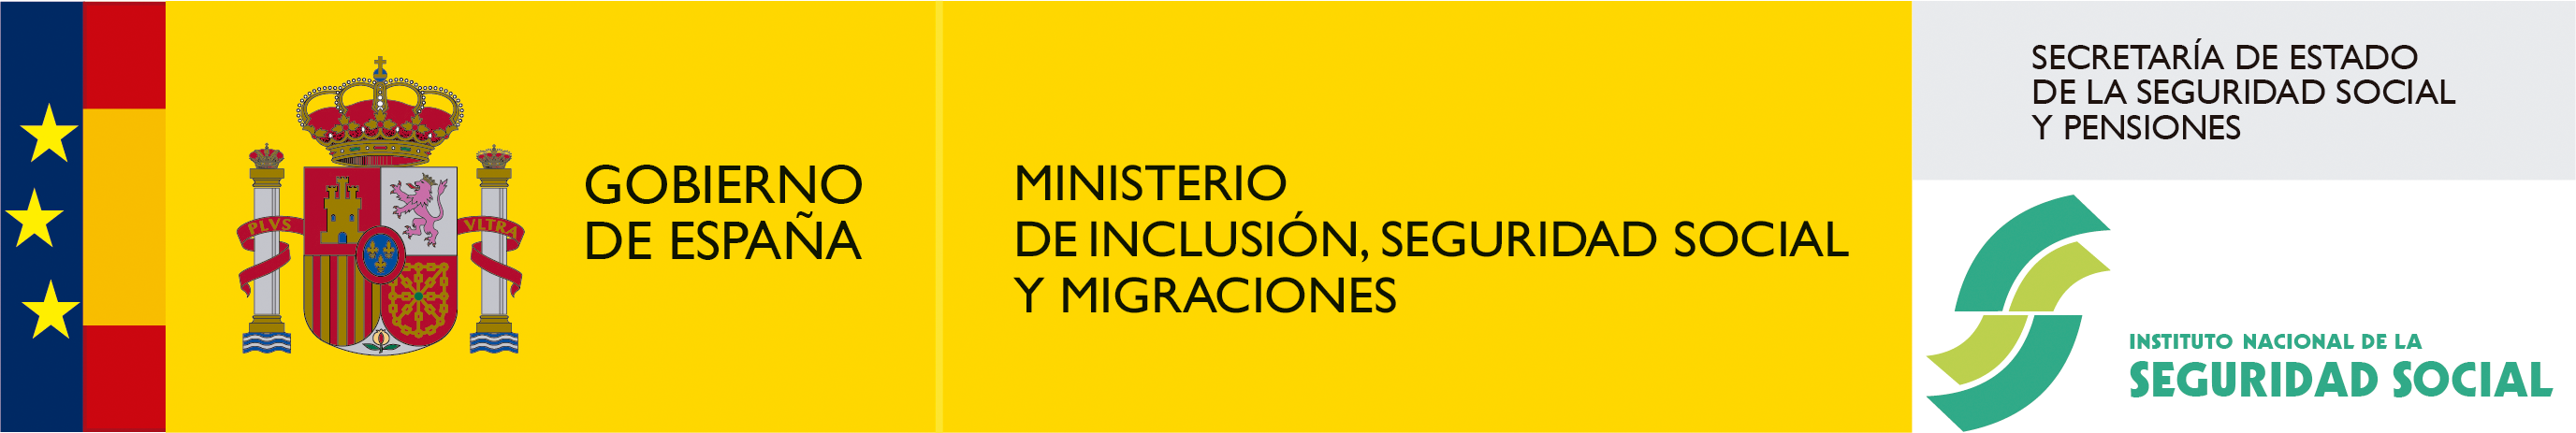 logo institucional